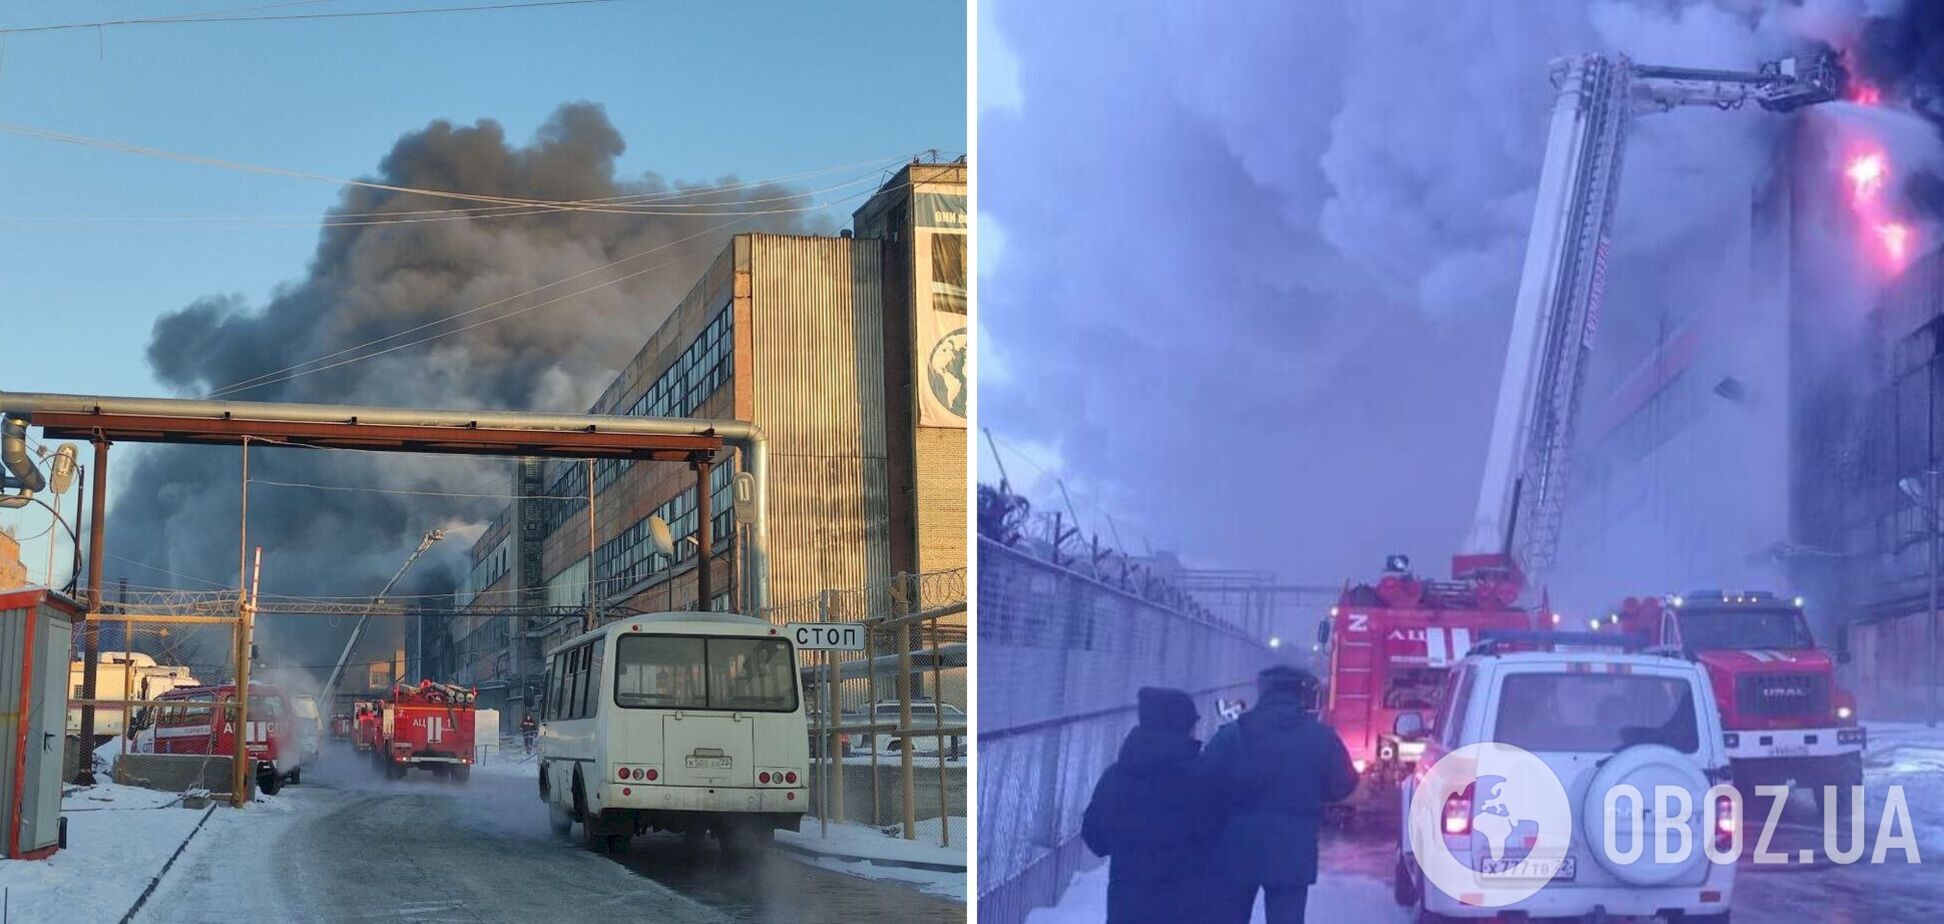 Пылало не только в Москве: в Барнауле произошел мощный пожар на шинном заводе, поднимался черный дым. Фото и видео